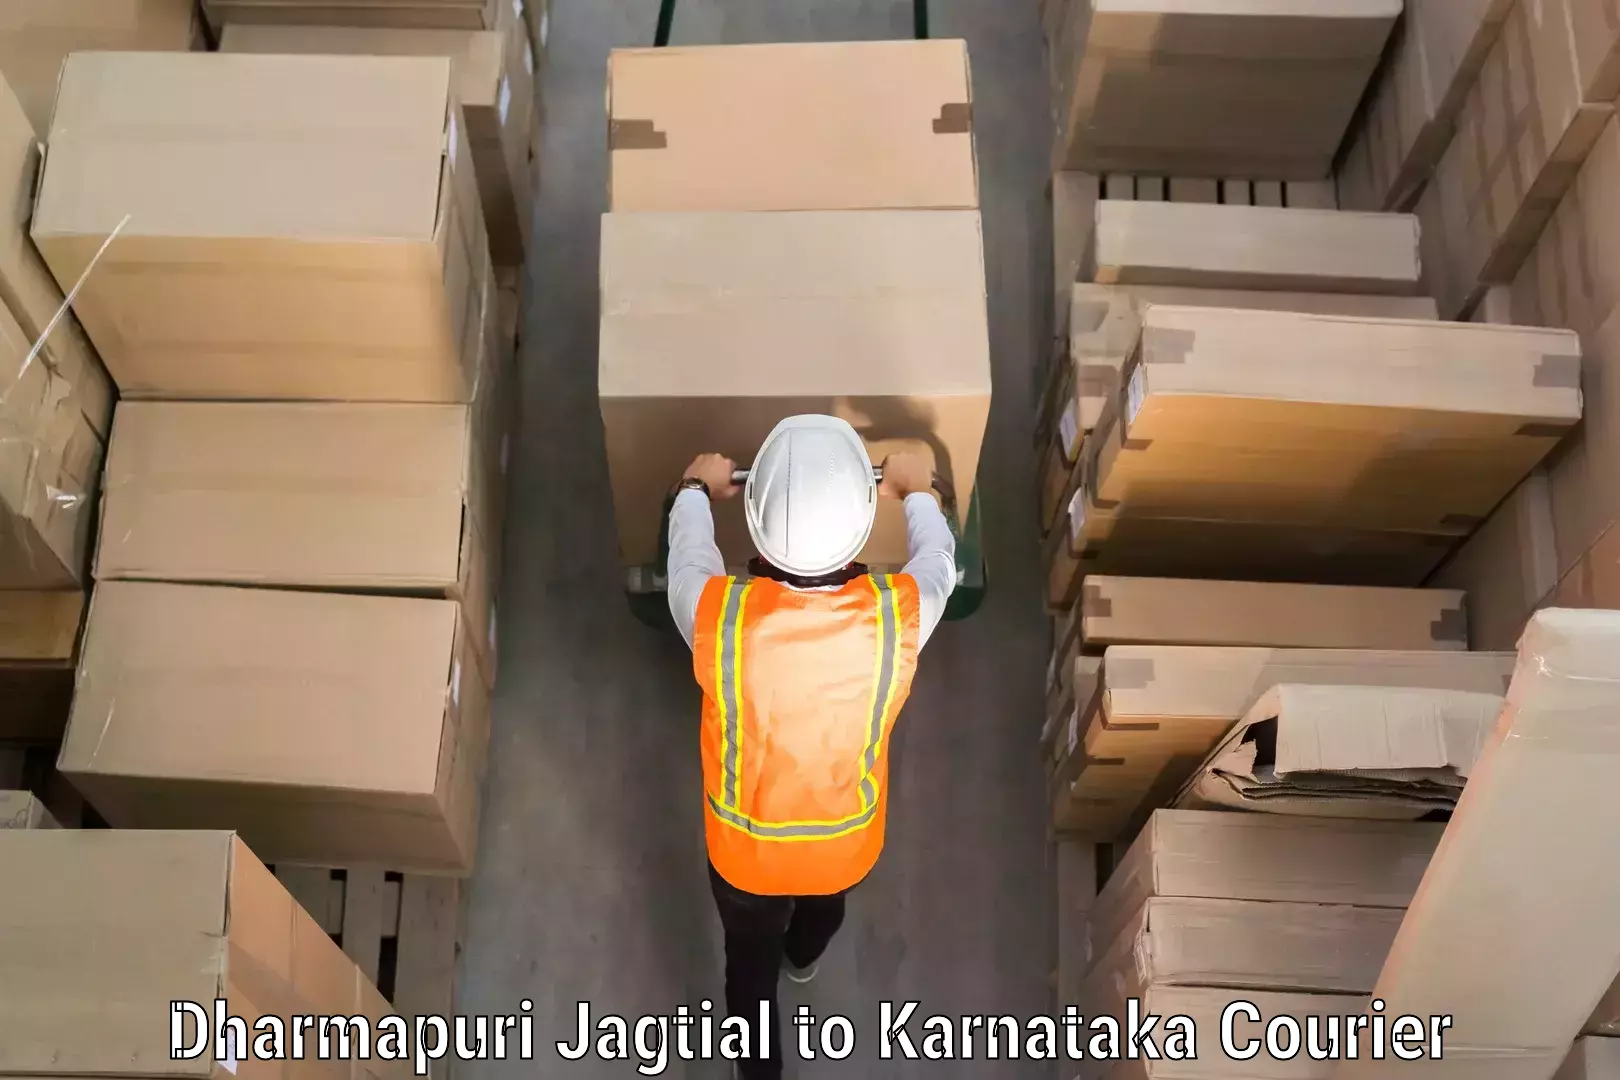 Baggage courier insights Dharmapuri Jagtial to Karwar